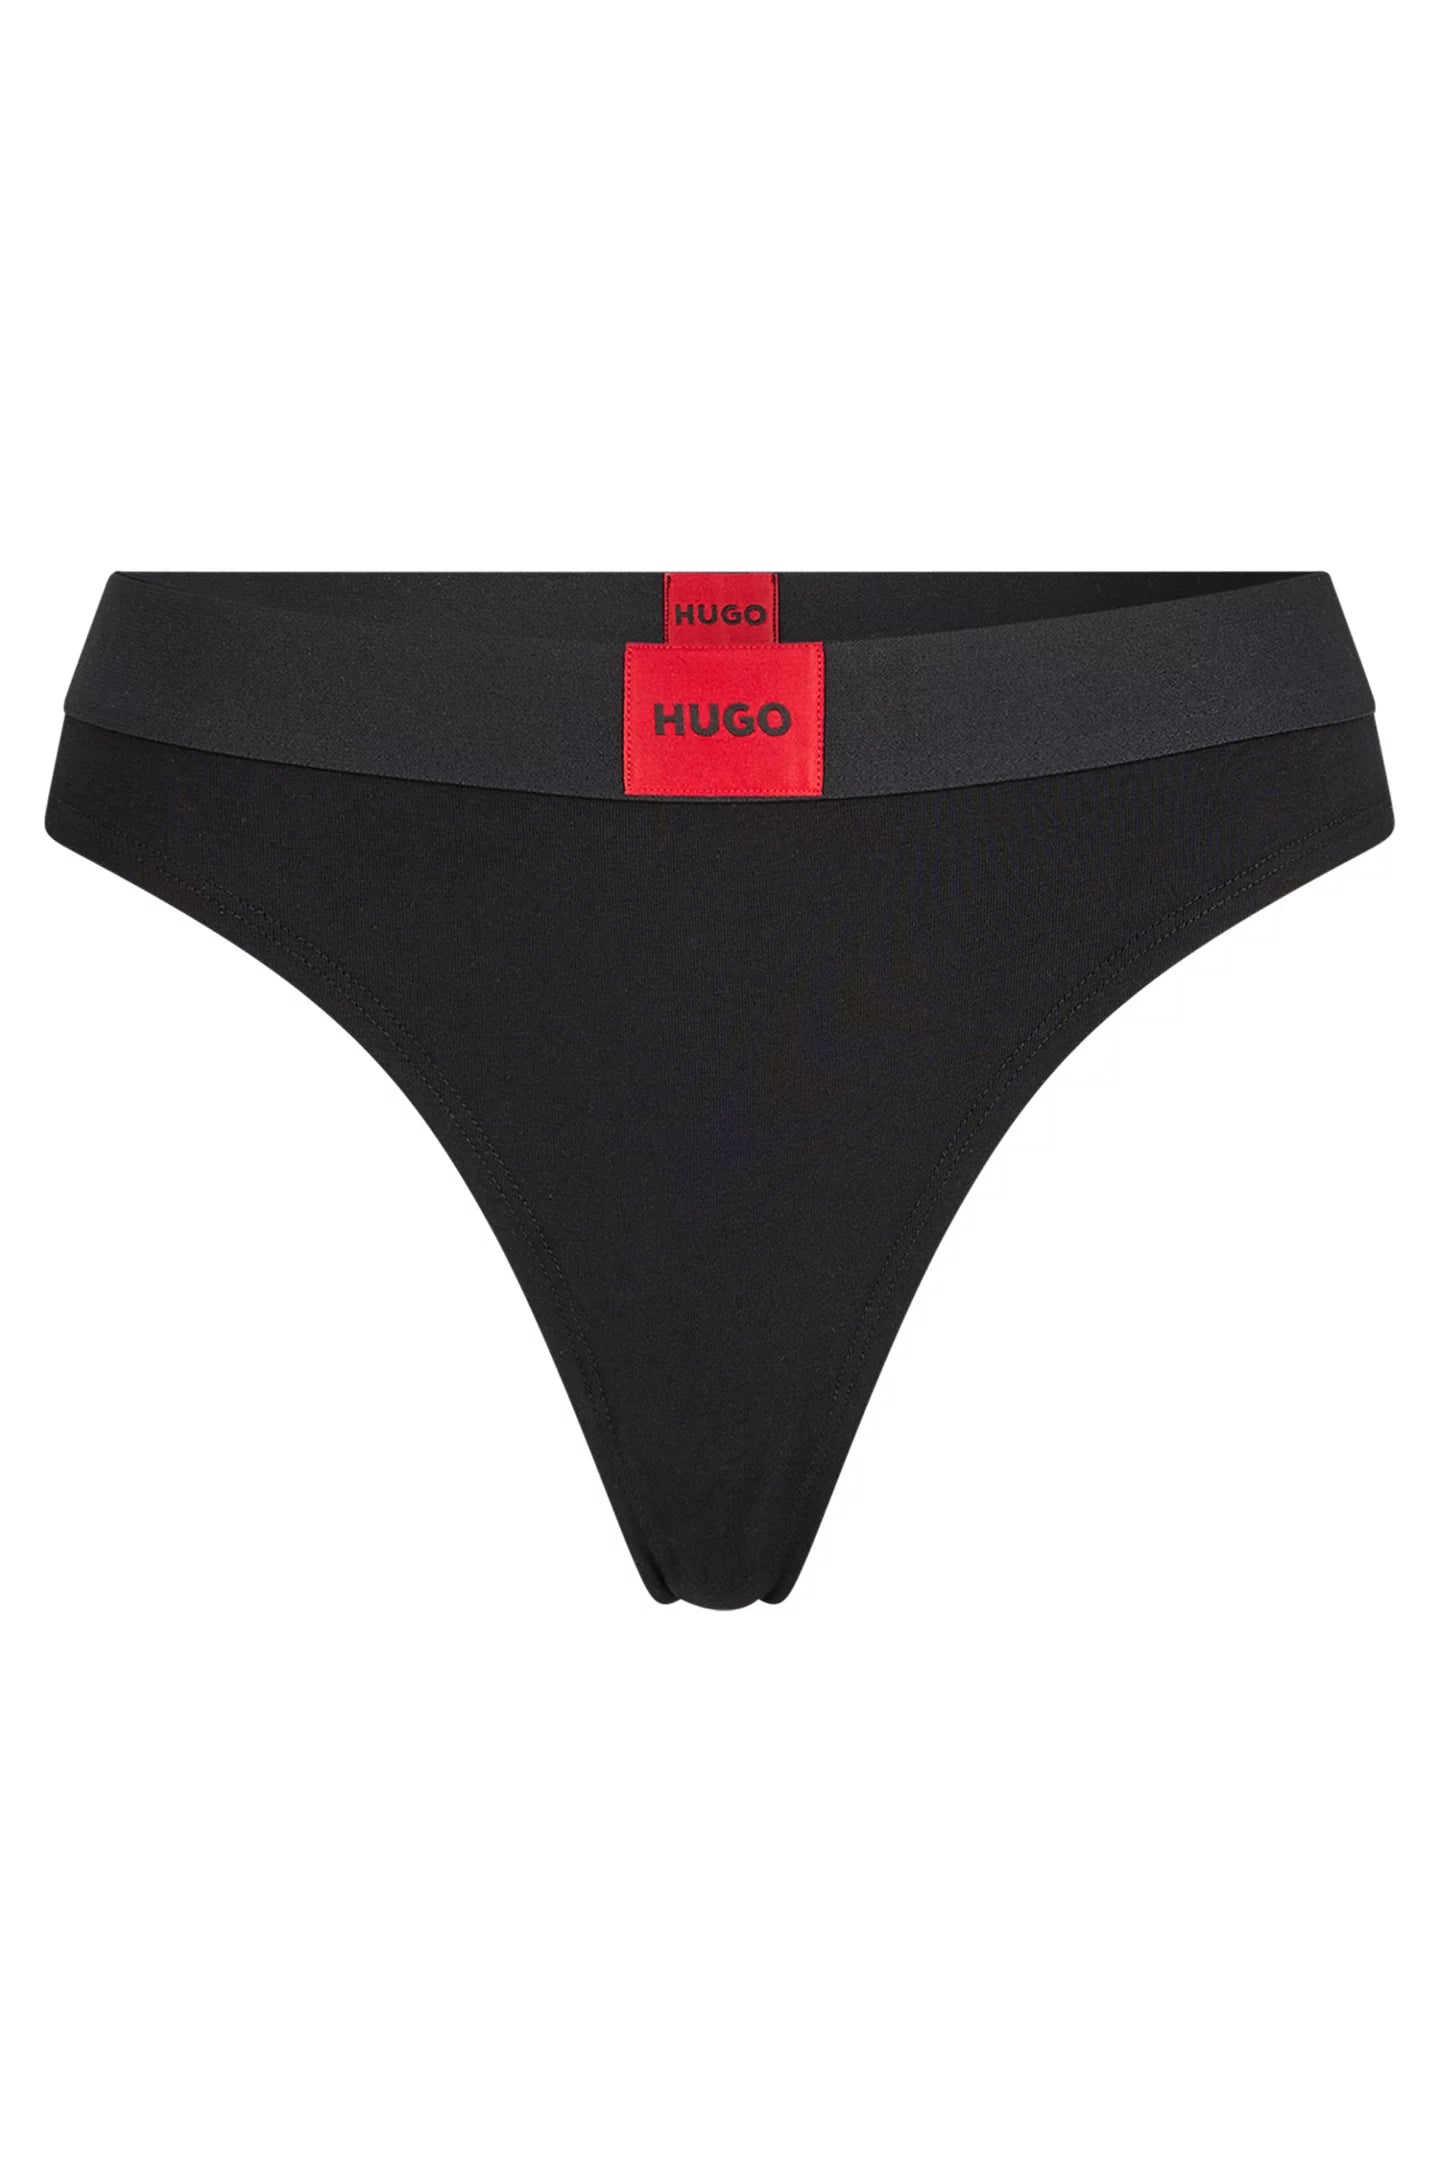 Culotte Red Label Hugo Boss de couleur Noir